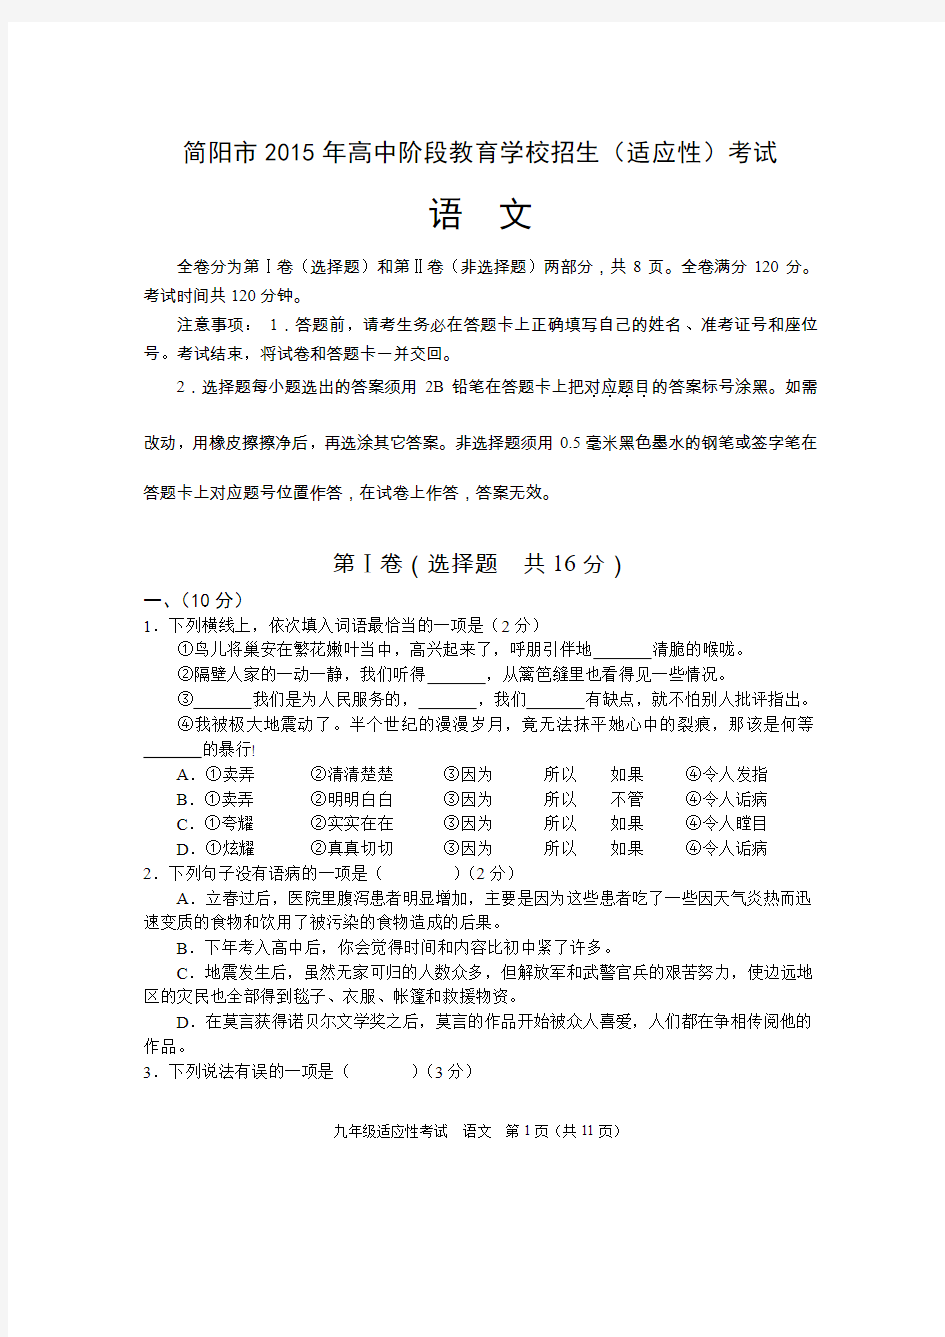 简阳市2015年高中阶段教育学校招生统一考试适应性考试题及答案